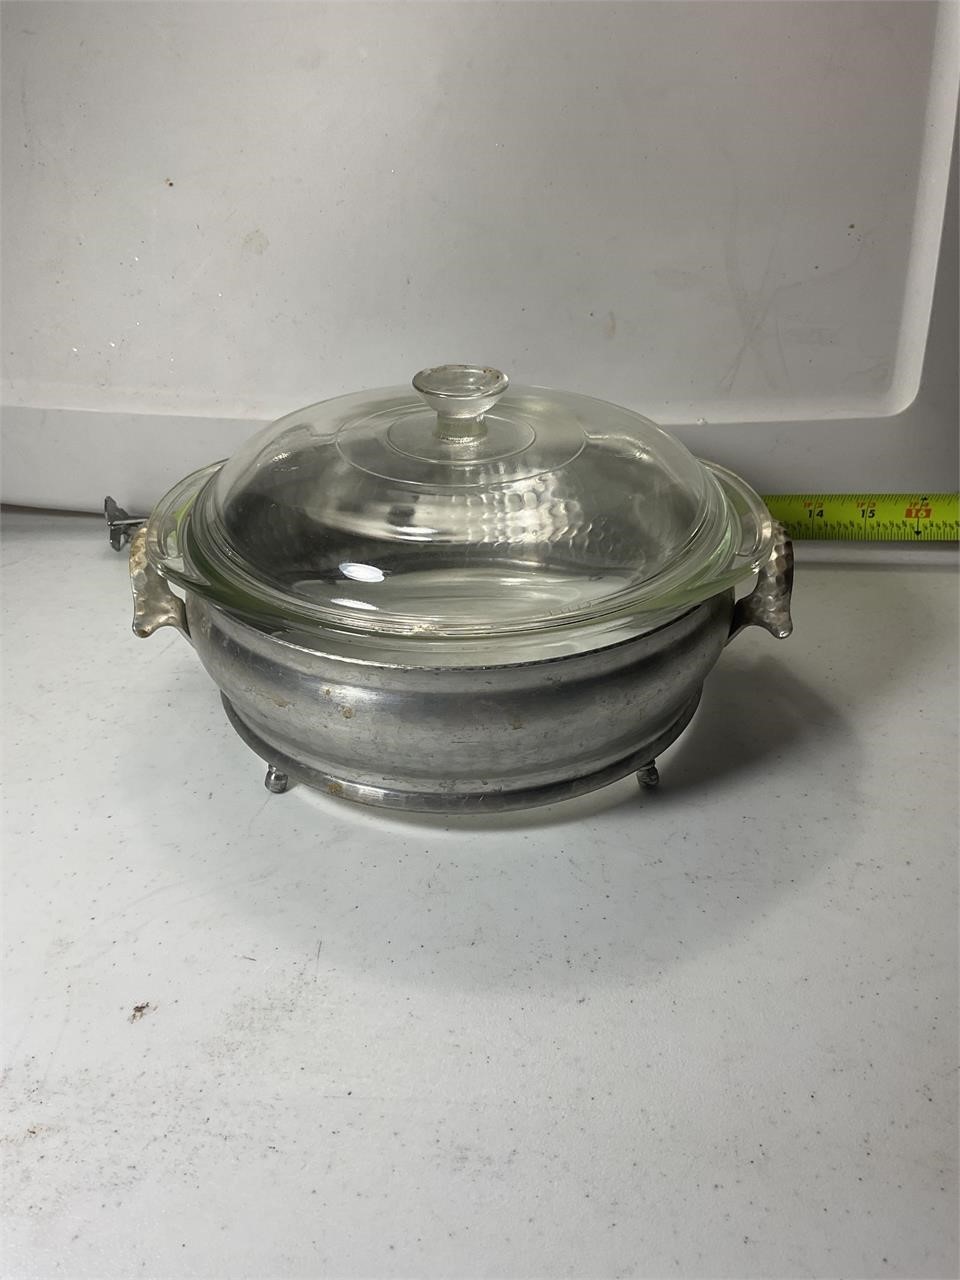 Vintage Pyrex Glass Dish